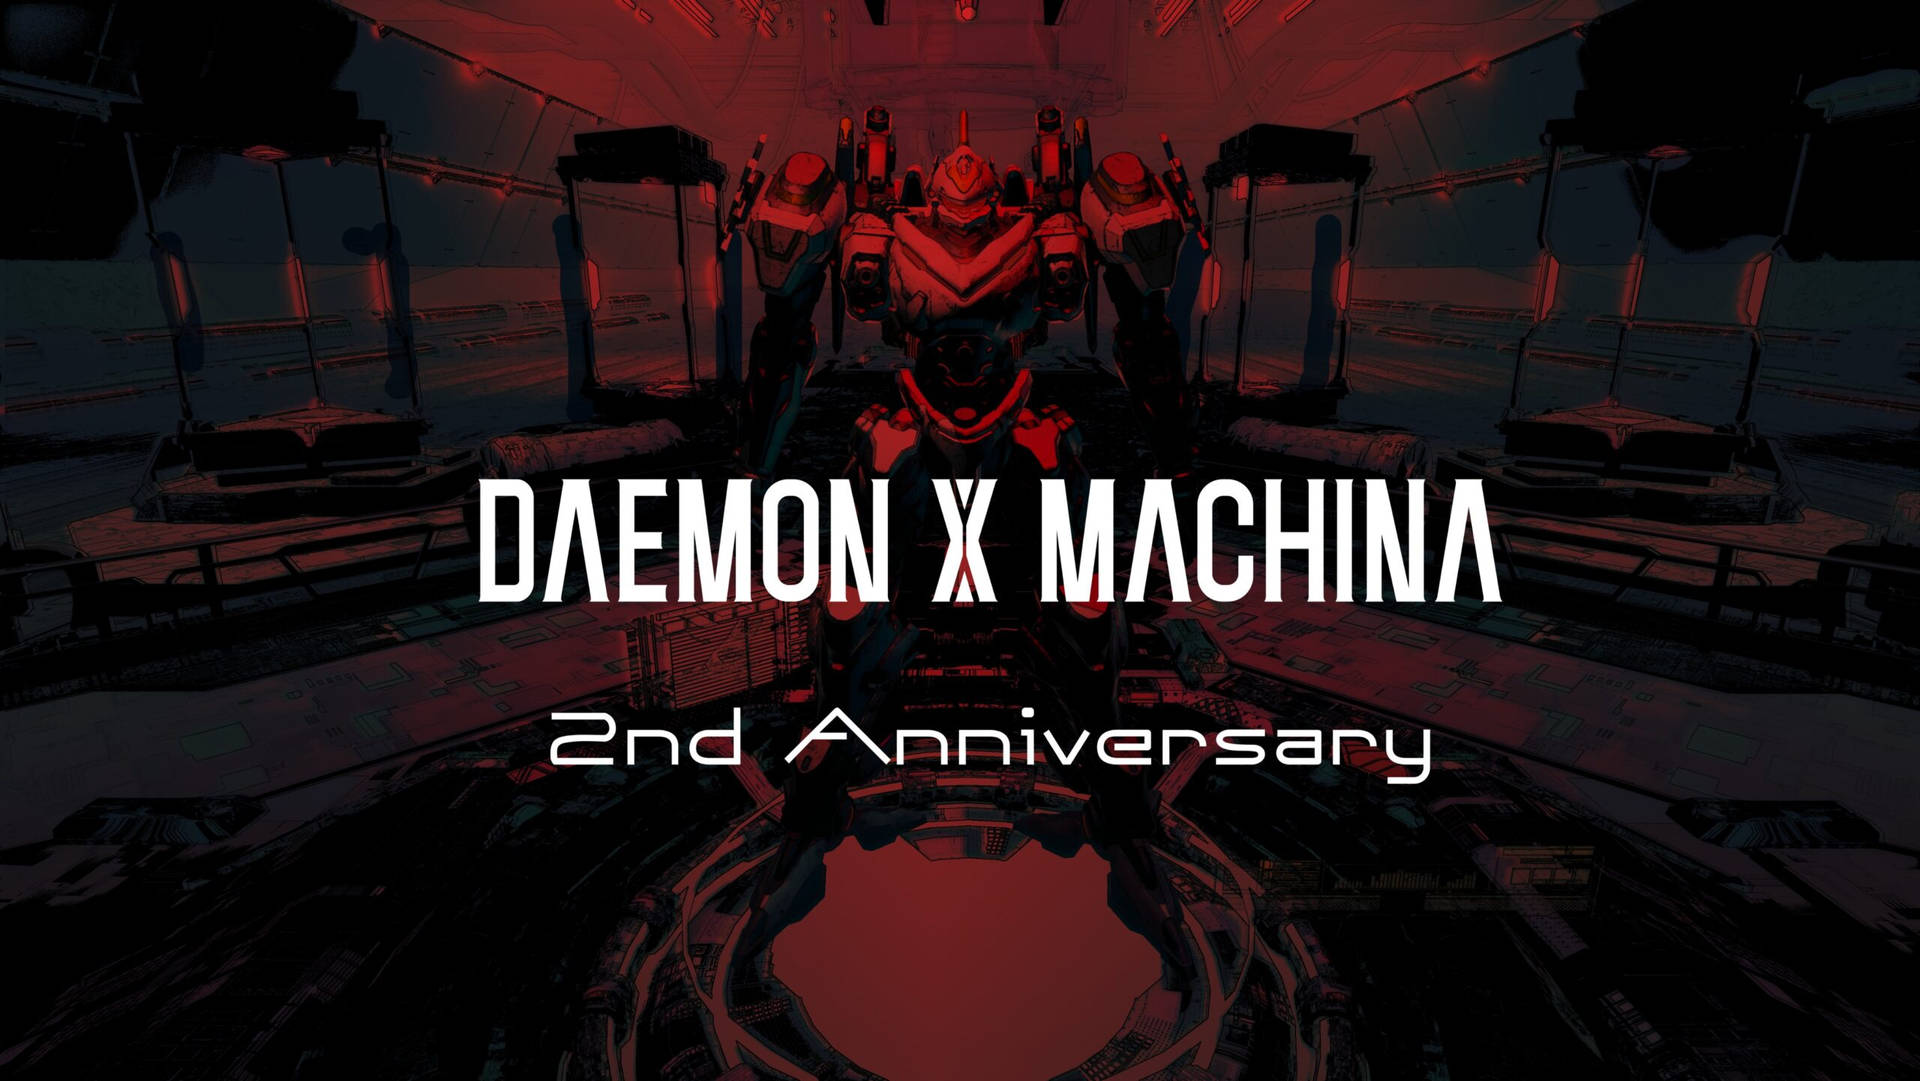 Daemonx Machina 2. Jubiläum Wallpaper